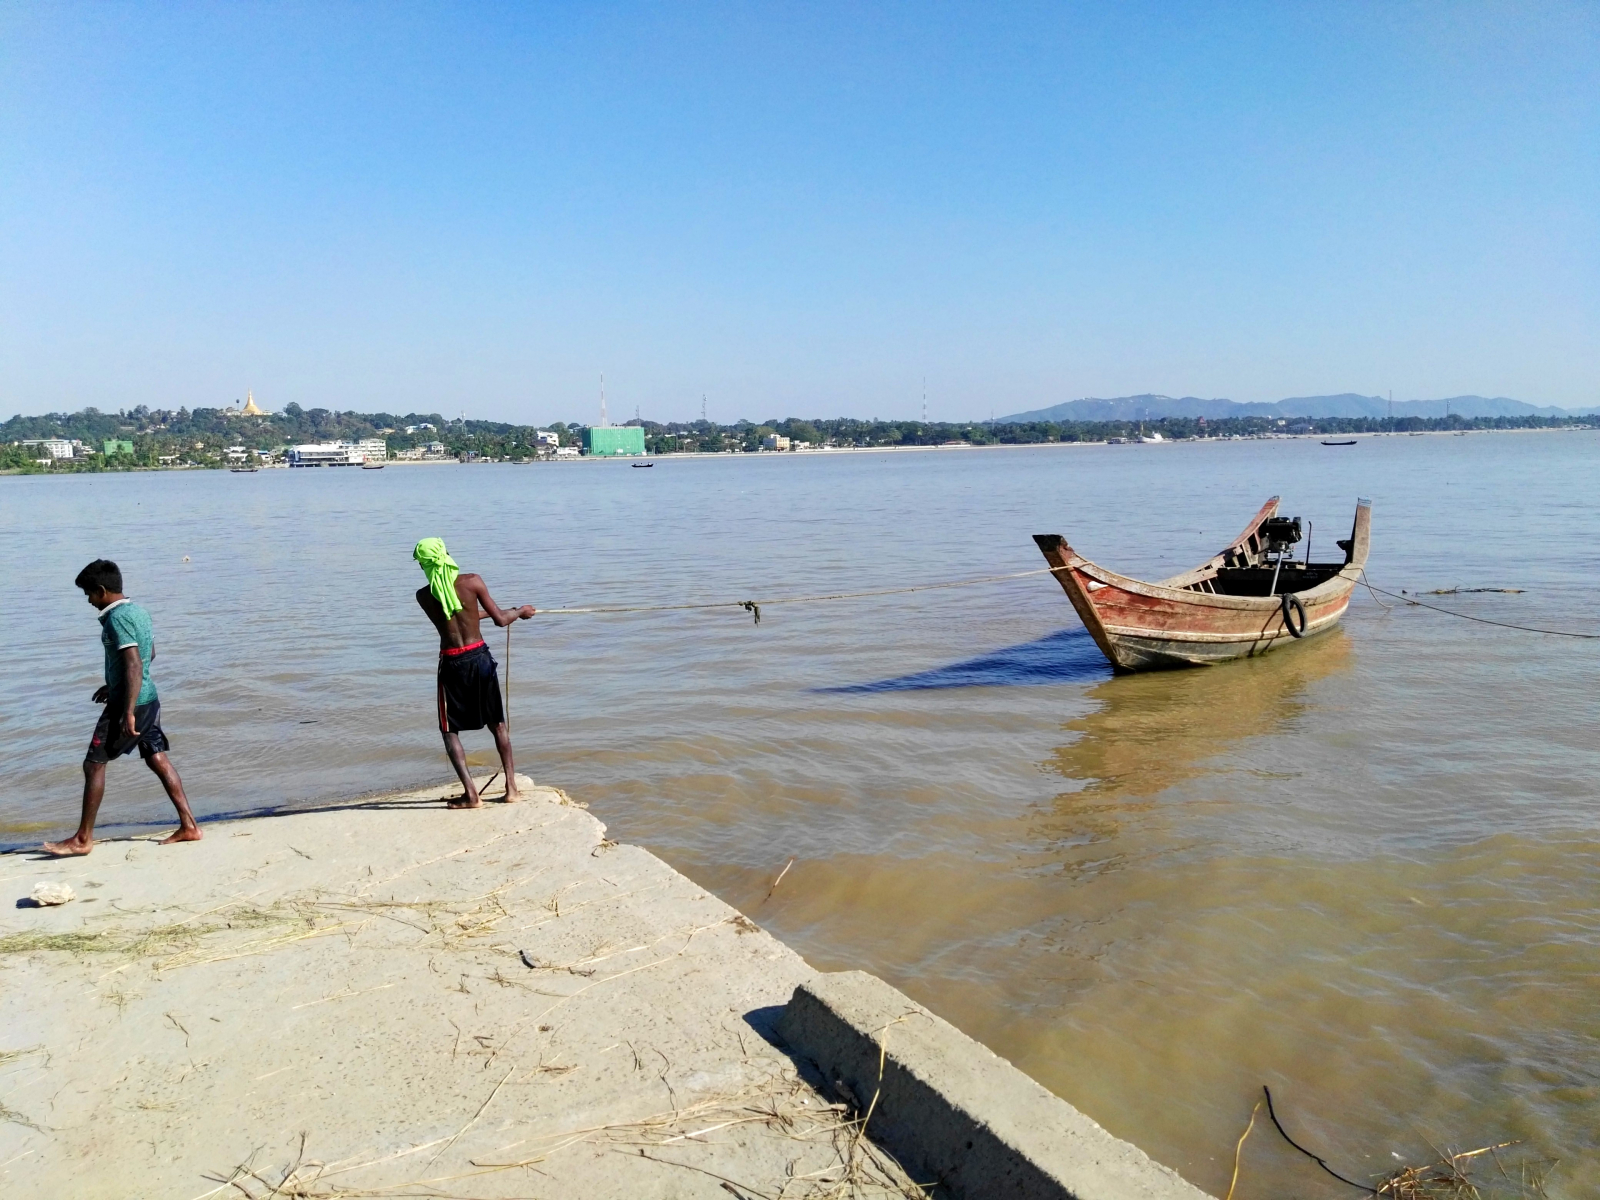 Plavba lodí přes řeku při návratu z výletu, Slavnost na ulici, Mawlamyine, Myanmar